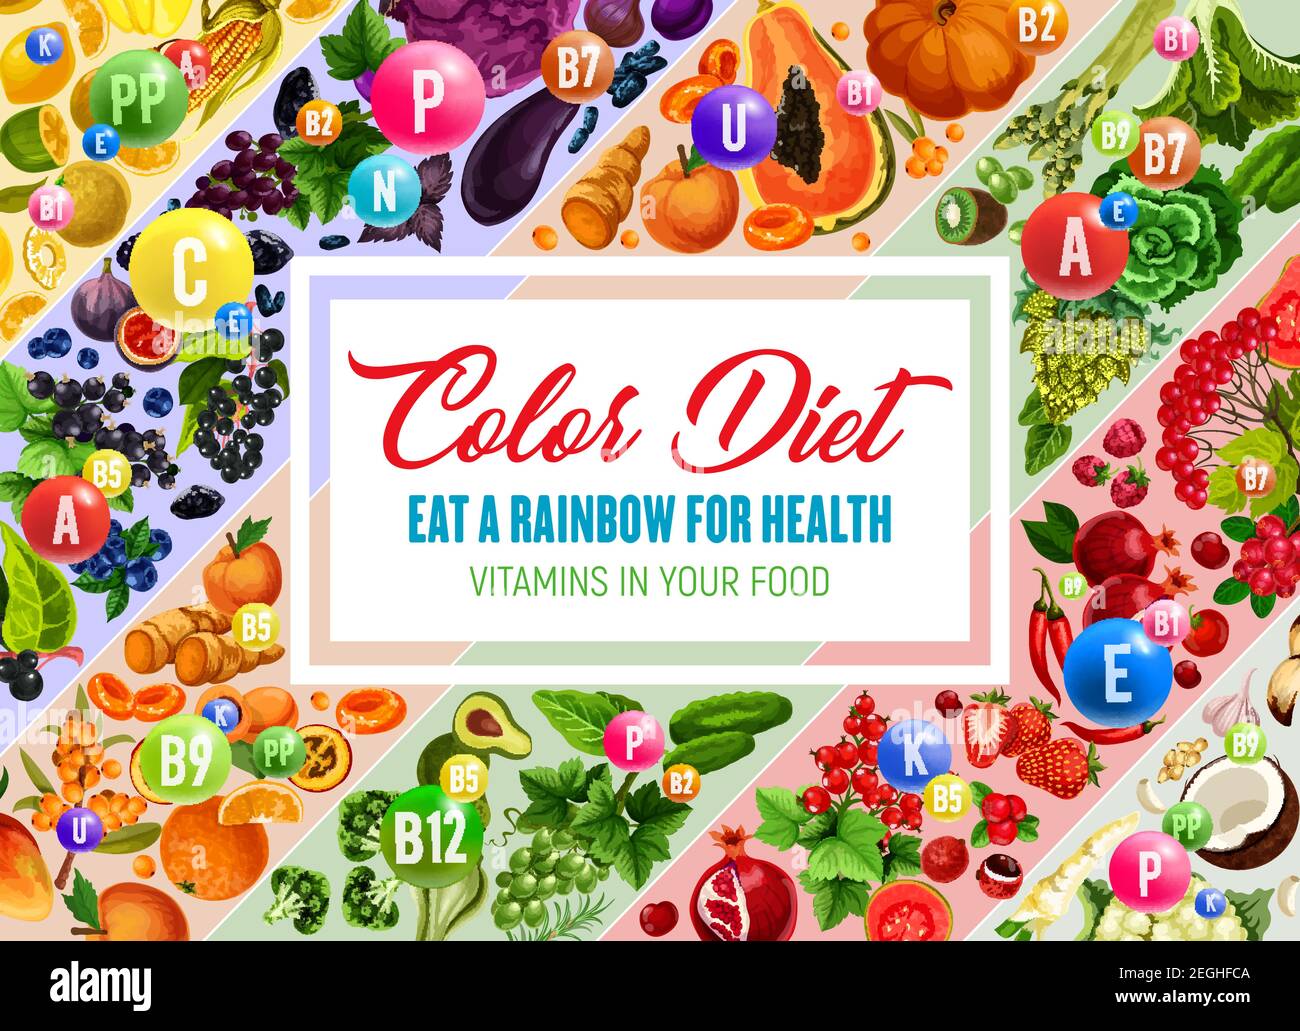 Régime alimentaire en couleur mangez une affiche arc-en-ciel pour la nourriture naturelle en vitamines et une nutrition saine. Légumes frais, fruits et baies, noix, épices et herbes de couleur spectre s Illustration de Vecteur